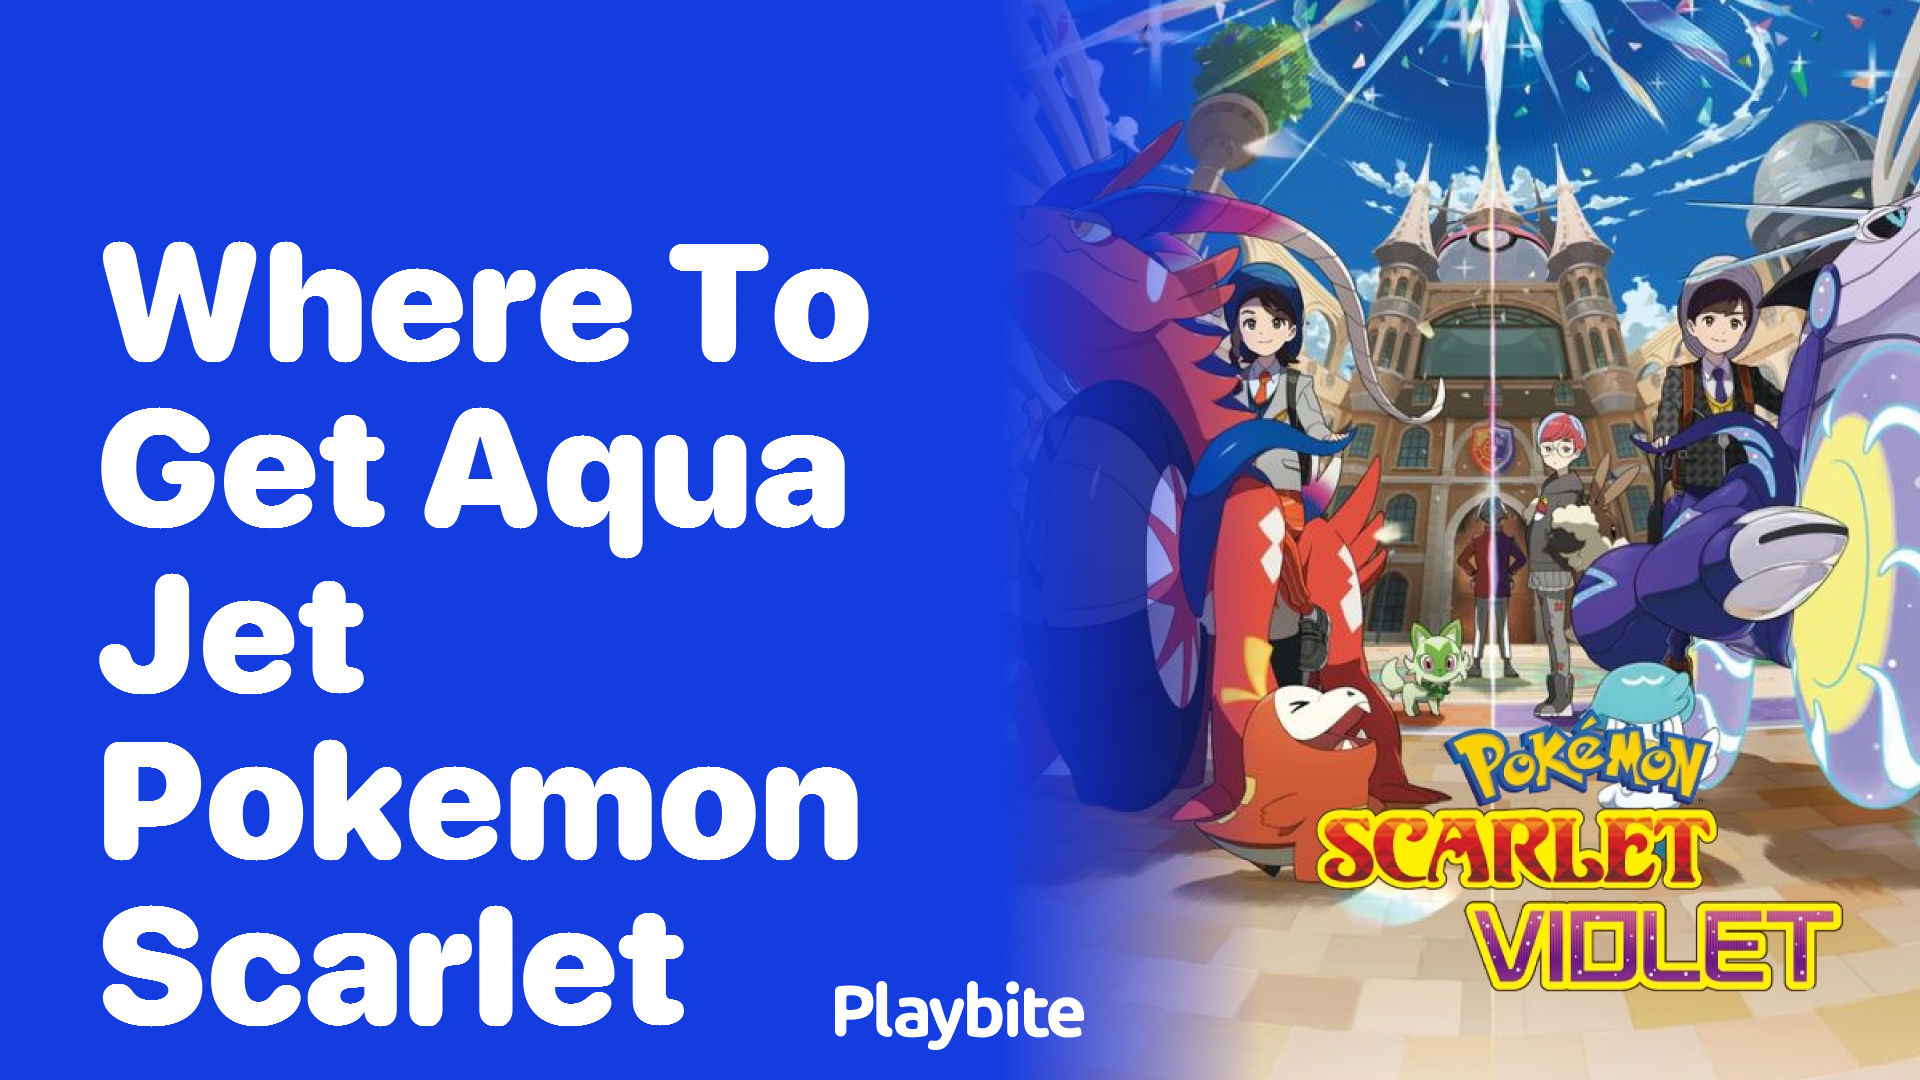 Where to Get Aqua Jet in Pokemon Scarlet